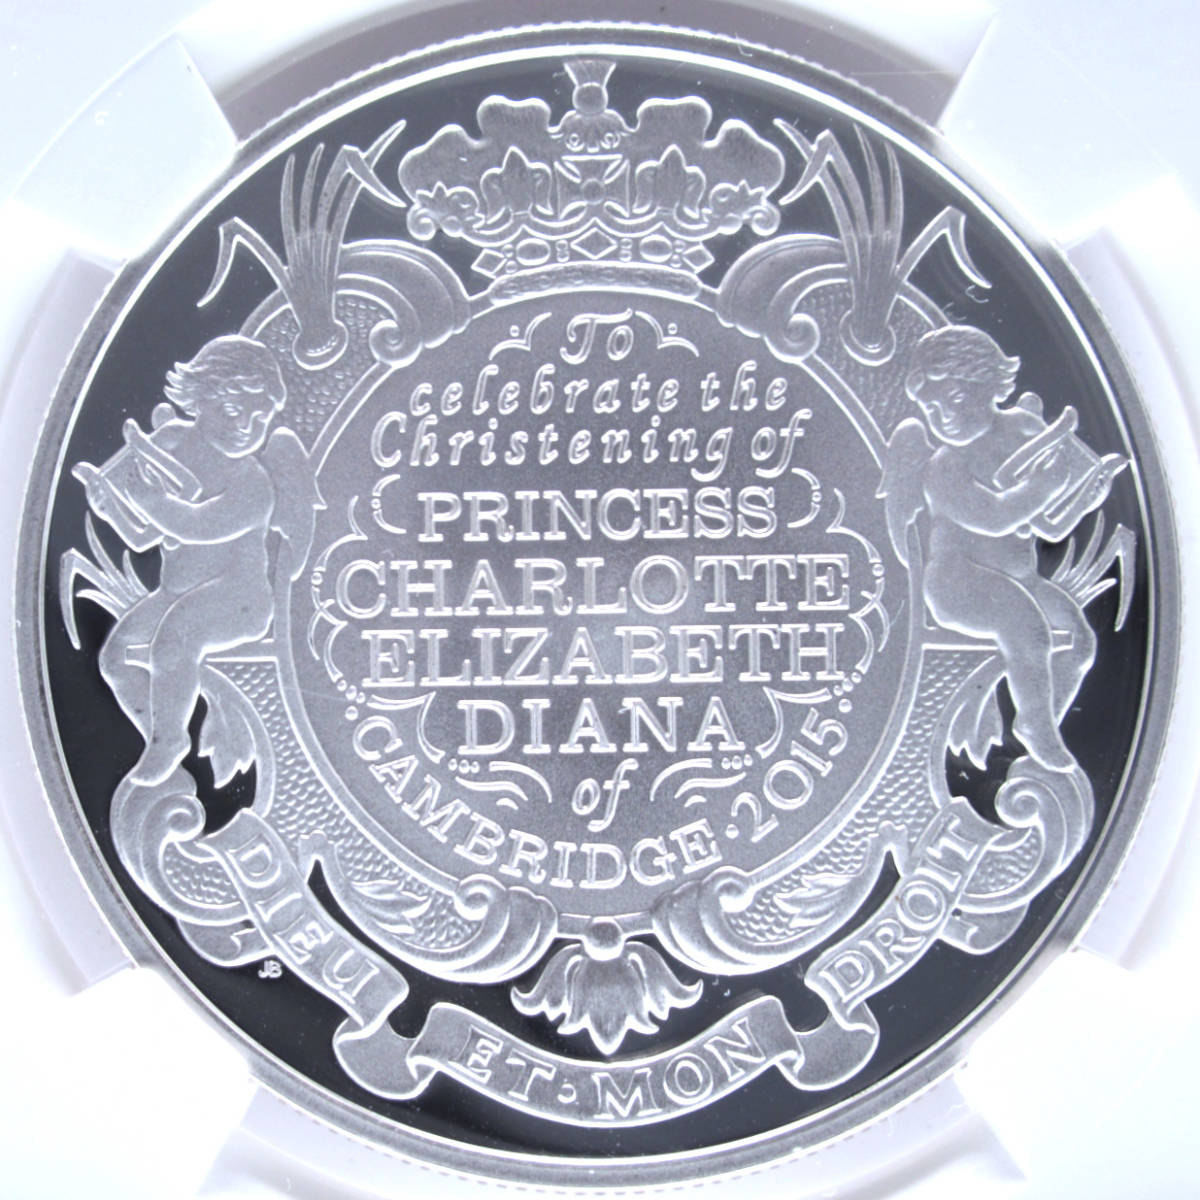 2015年 イギリス 5ポンド銀貨 NGC GEM PROOF シャーロット王女洗礼記念硬貨 FIRST 500 STRUCK 